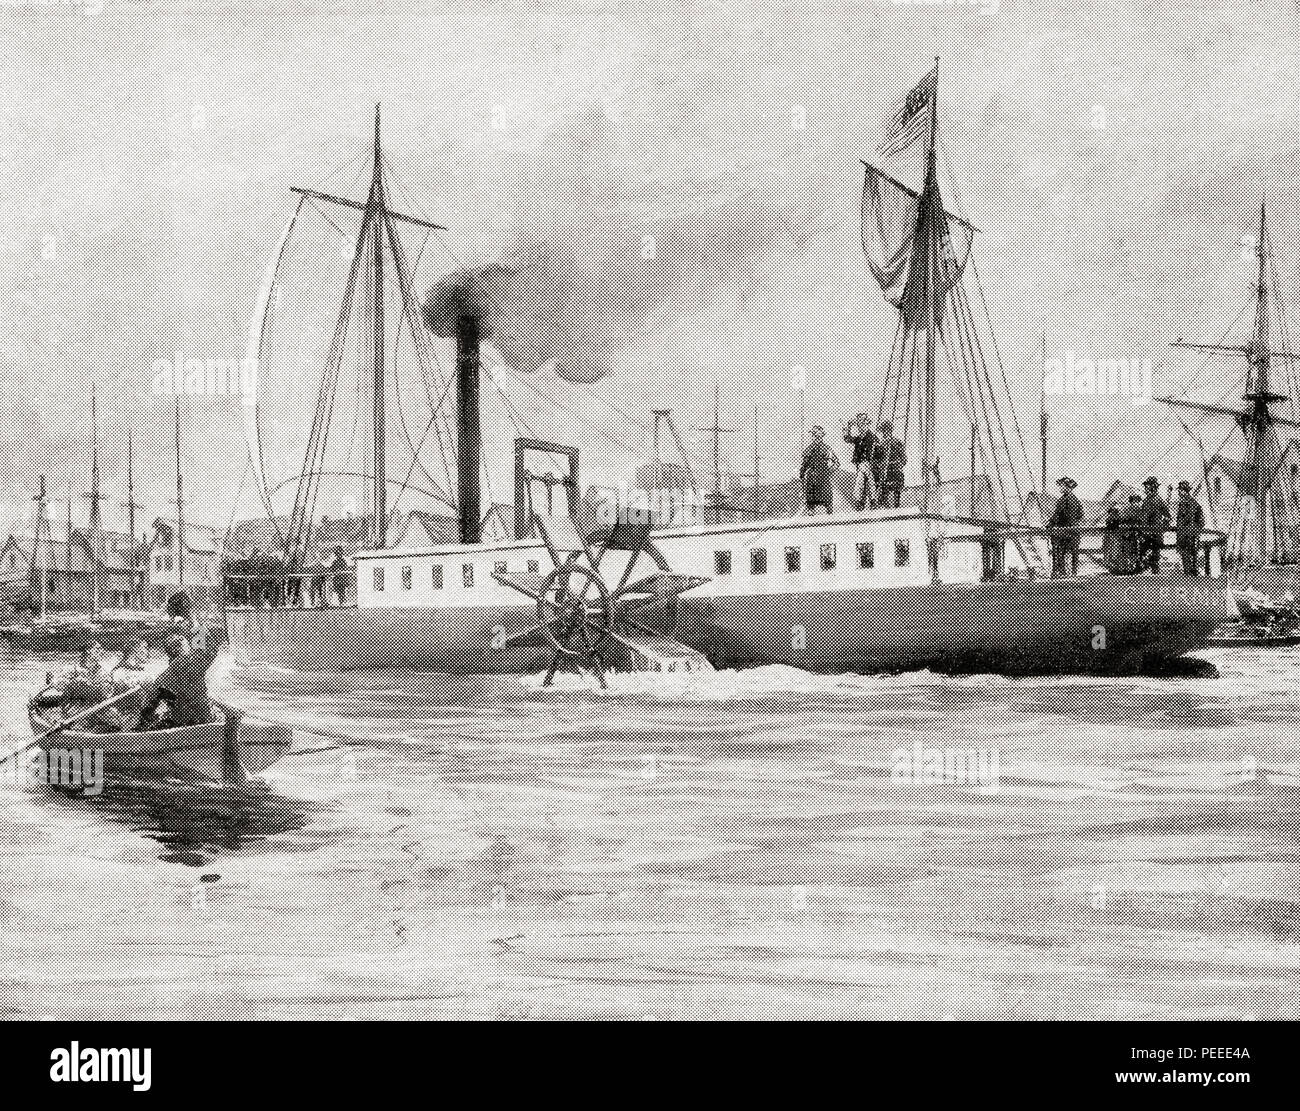 Robert Fulton navire à vapeur de la rivière North Steamboat ou Rivière du Nord, alias Le Clermont. Il navigua 150 milles en 32 heures sur son voyage d'essai en 1807. Du livre de navires, publié vers 1920. Banque D'Images